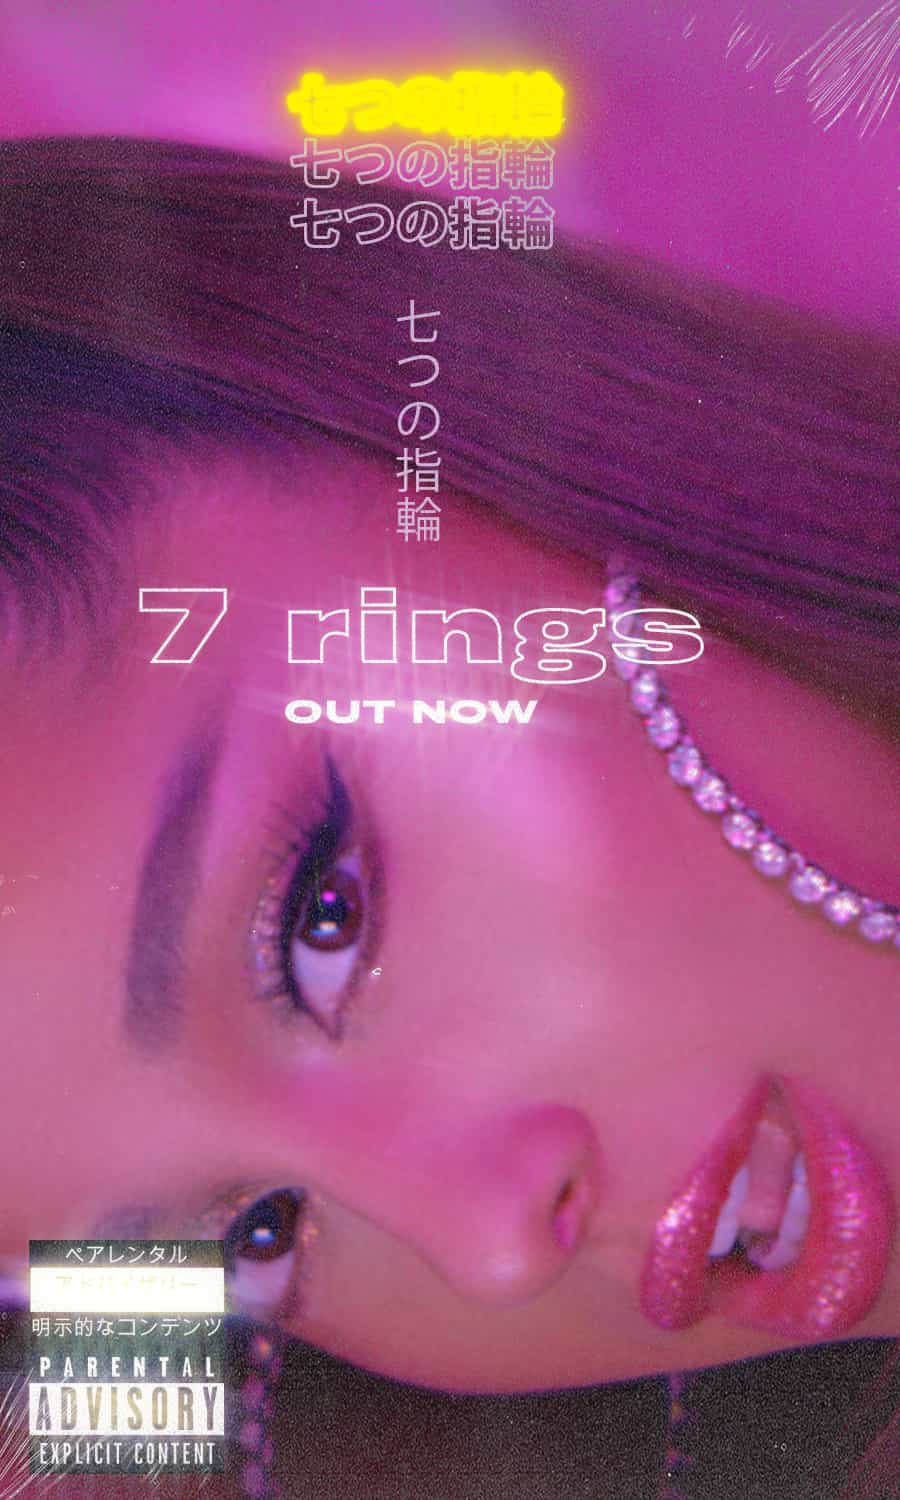 Ariana Grande 7 Rings Wallpapers - Top Free Ariana Grande 7 Rings ...